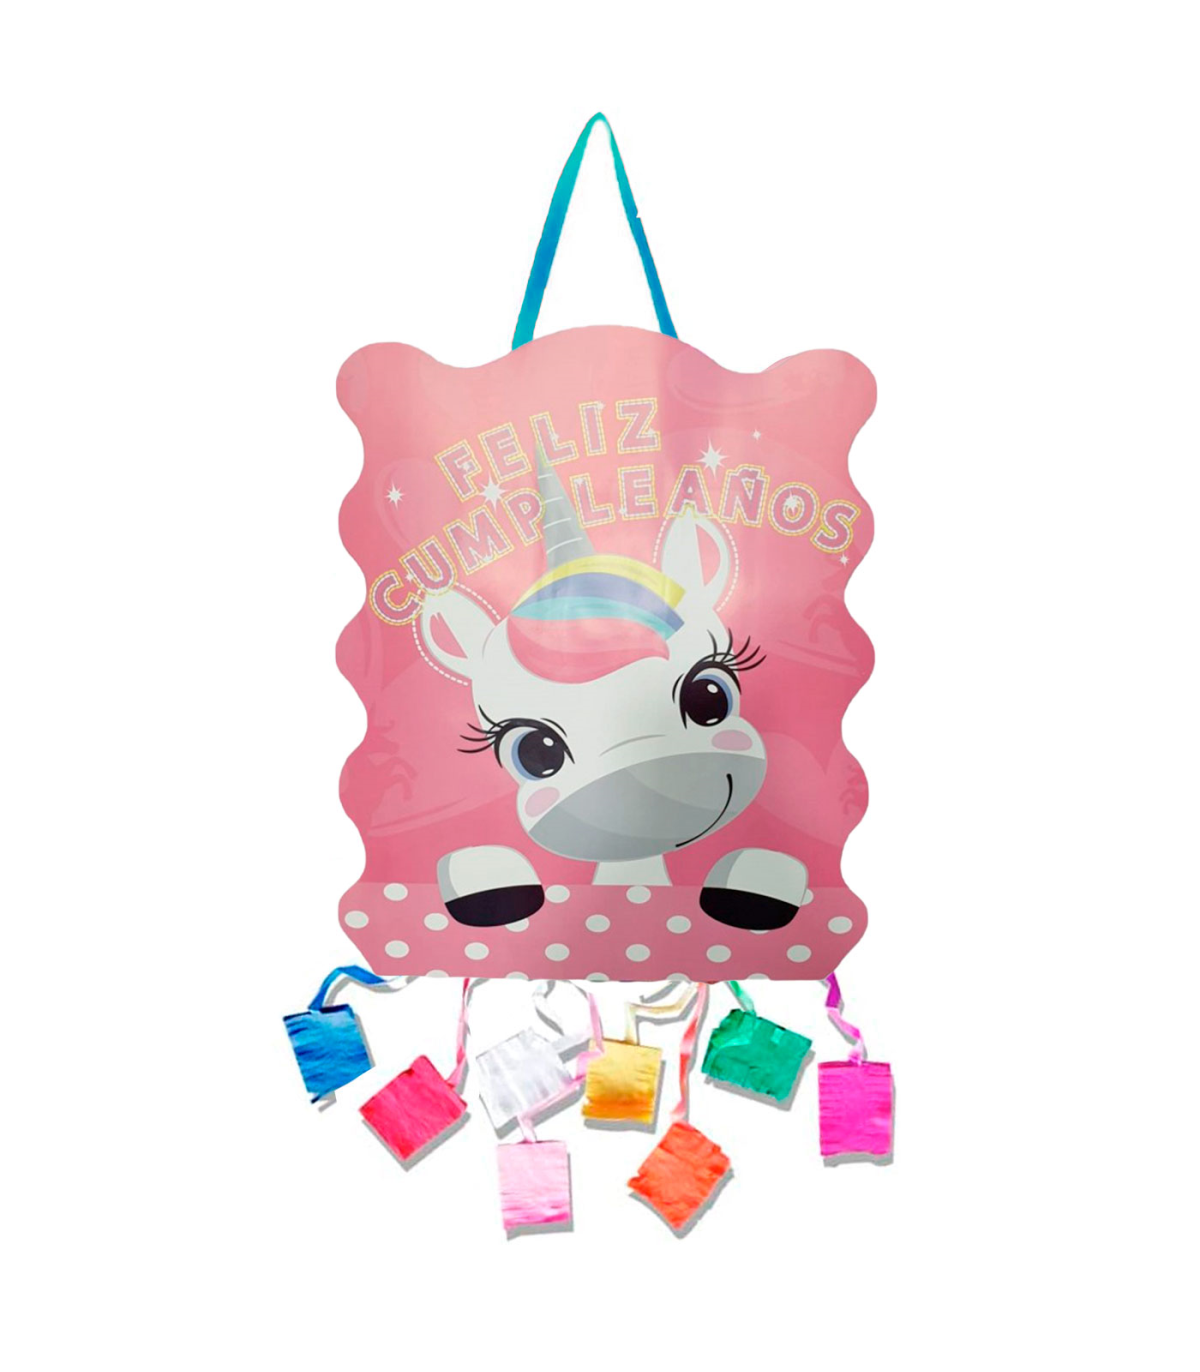 Tradineur - Piñata de unicornio, feliz cumpleaños, cartón